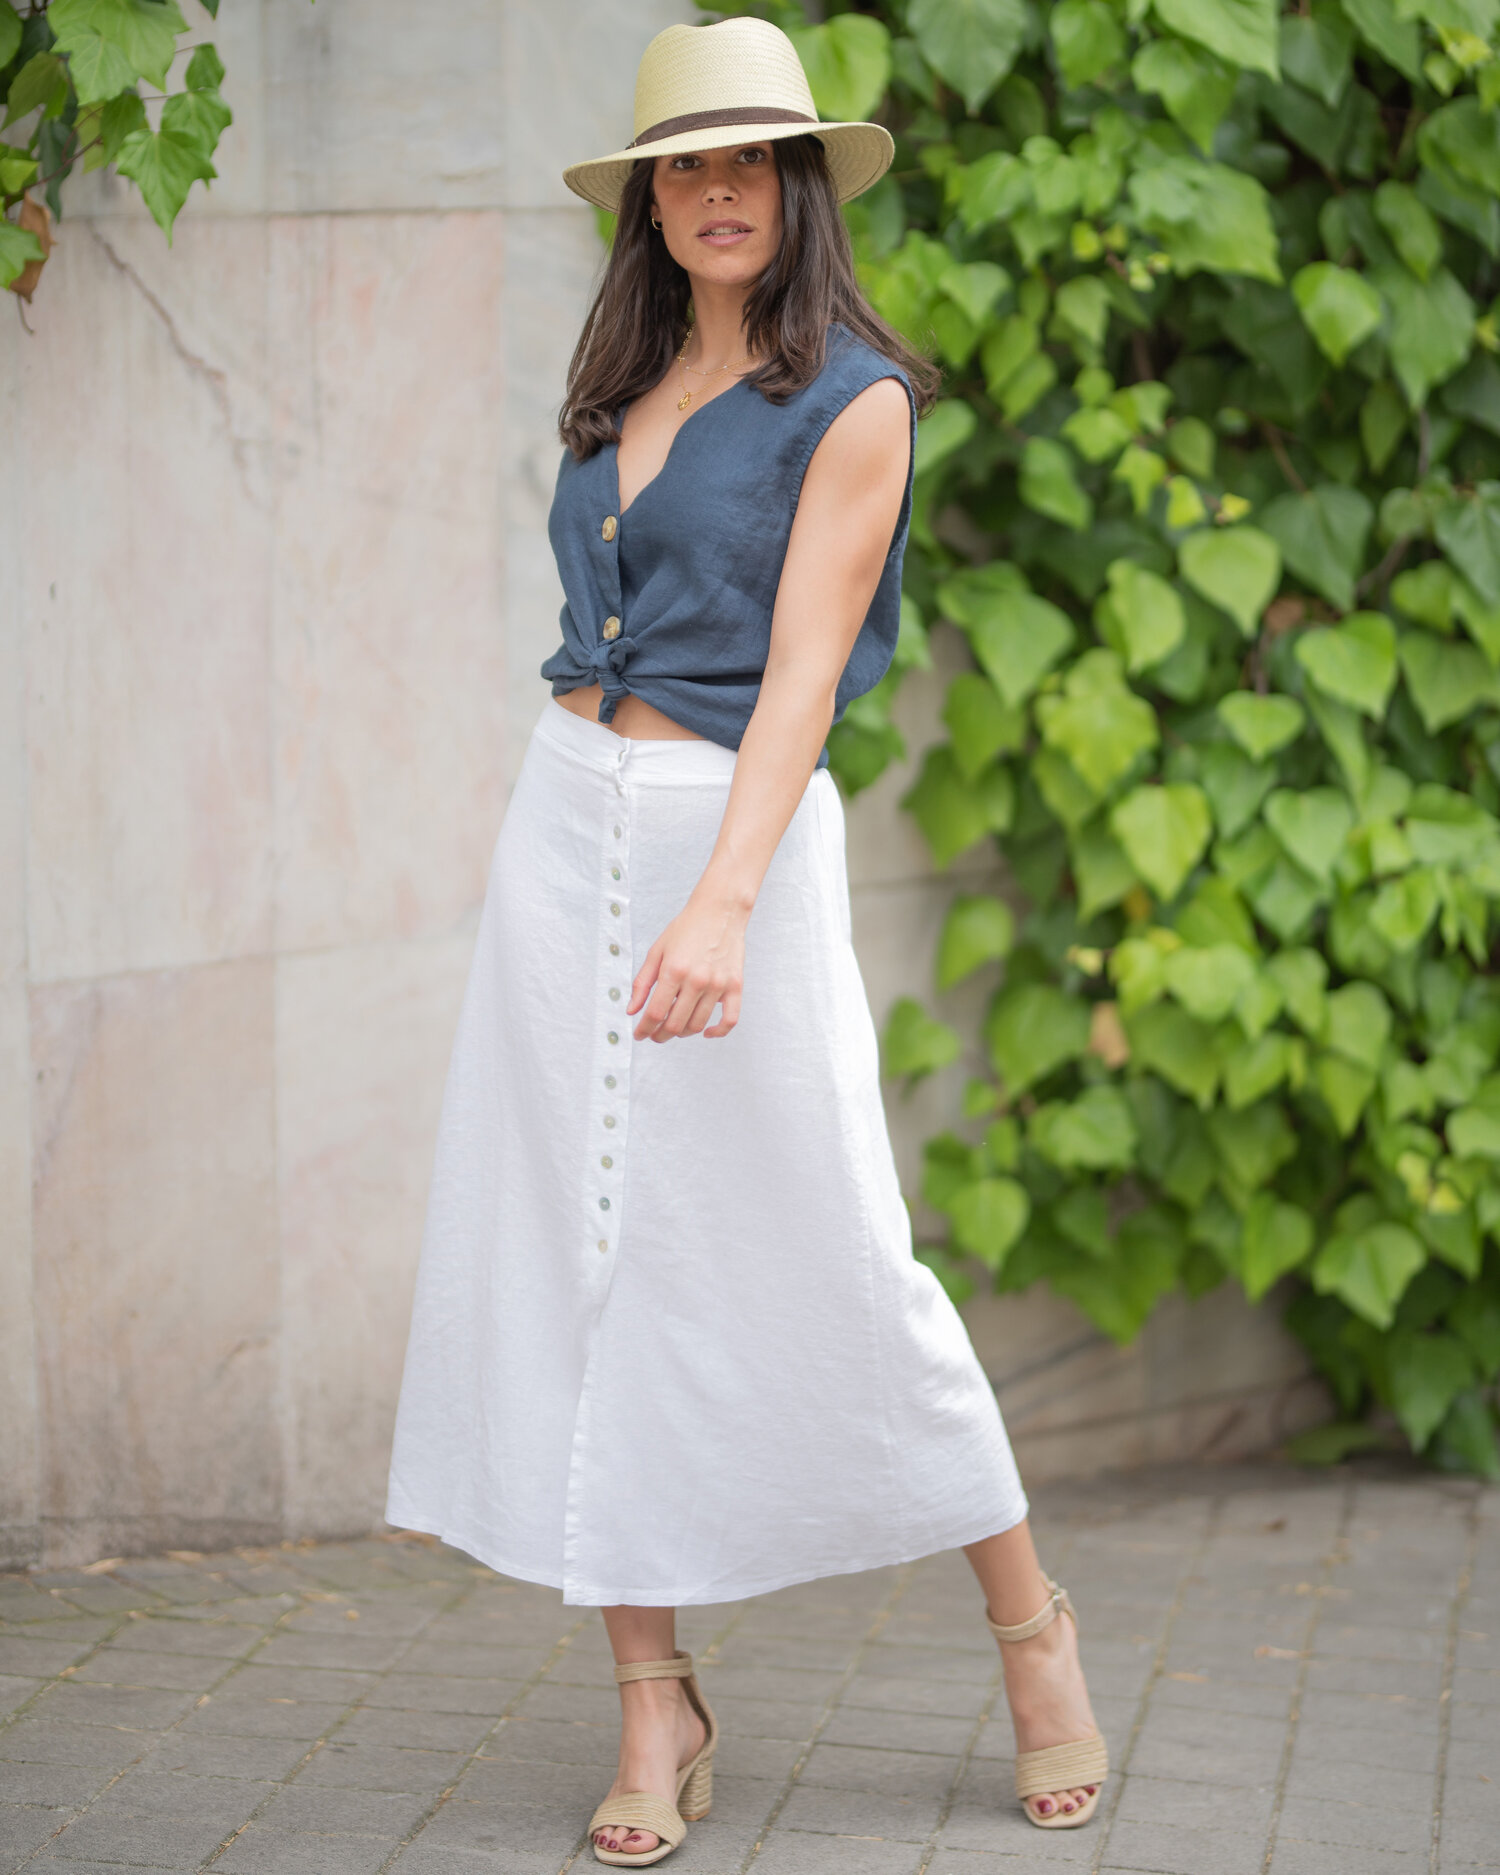 Cómo combinar falda blanca larga — Jand | Ropa Mujer